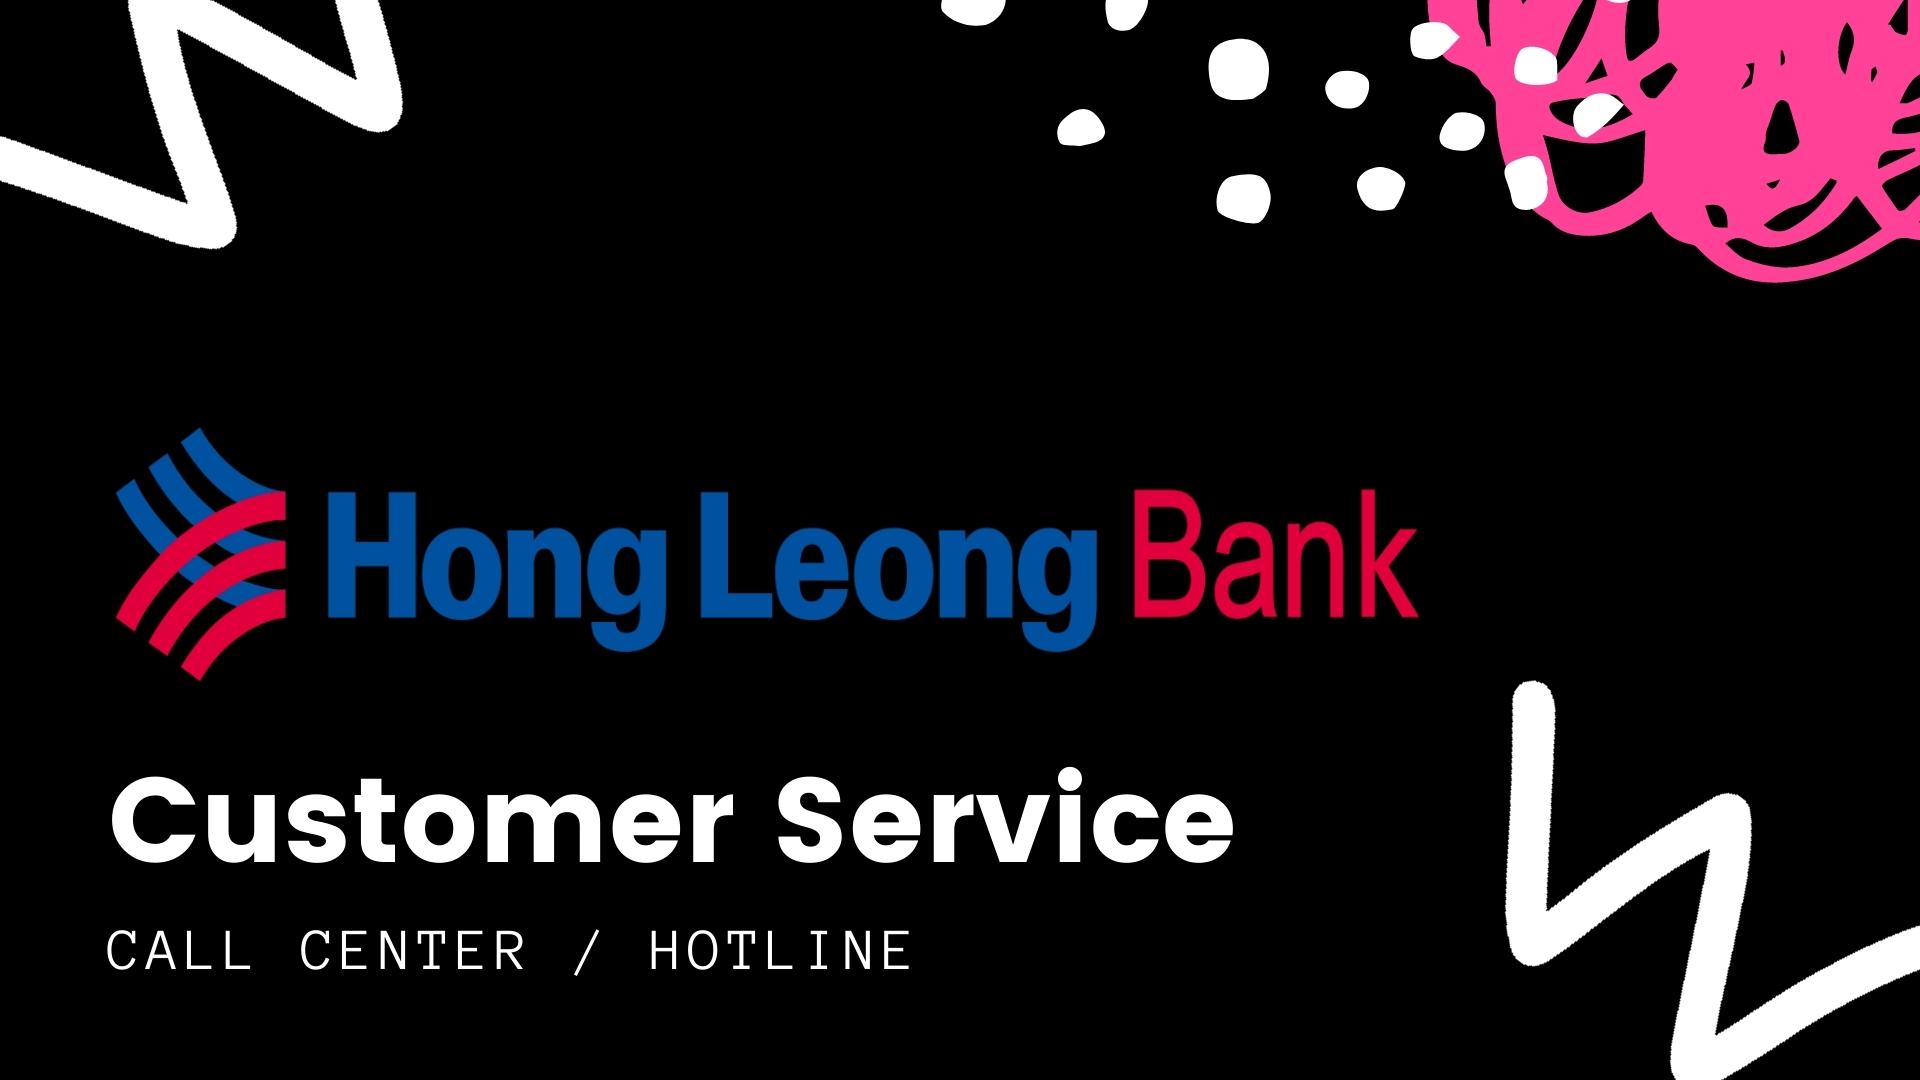 Hong Leong Bank Customer Services